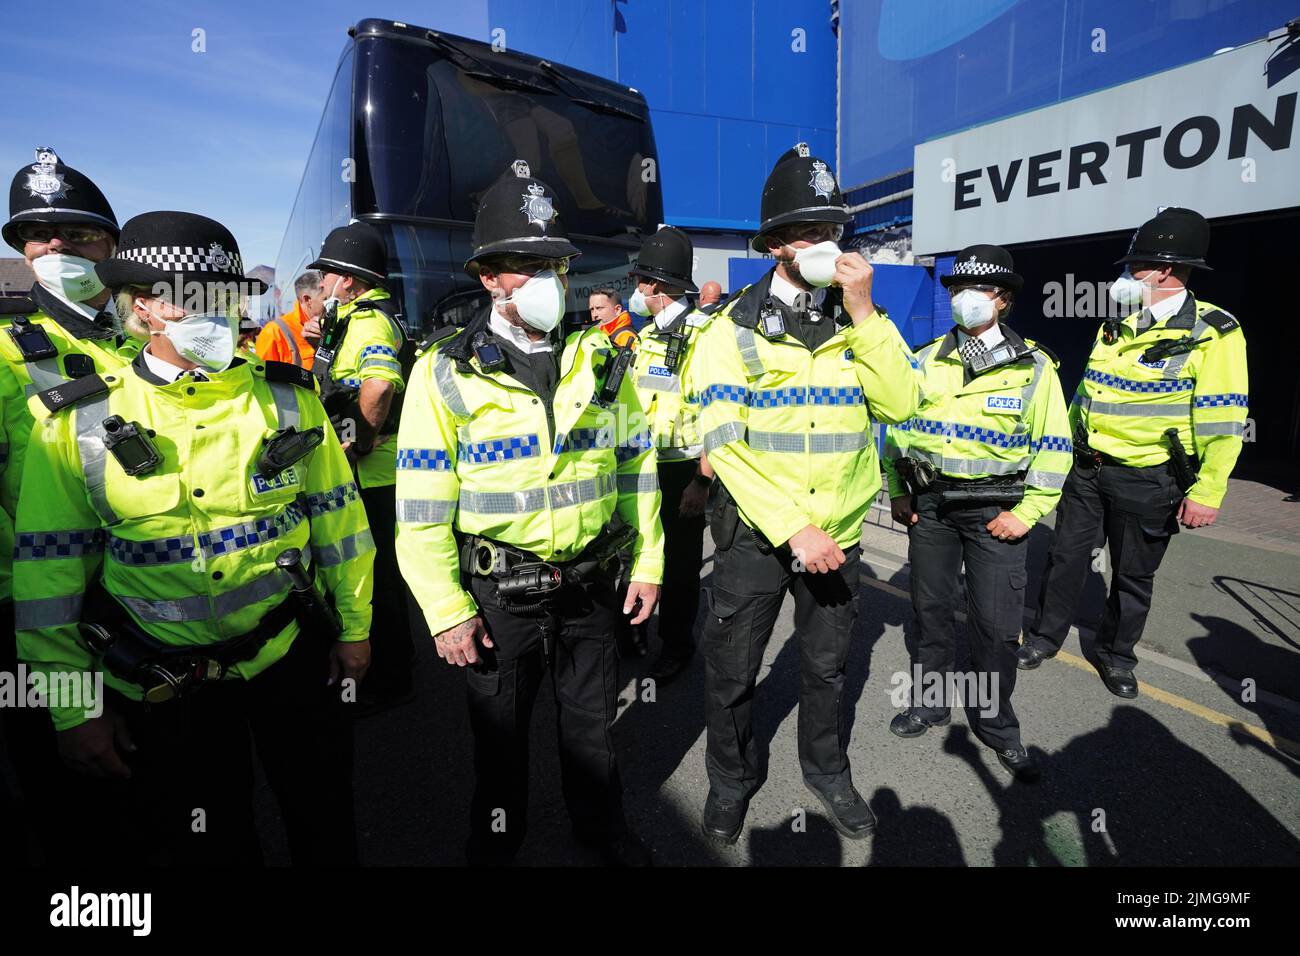 Polizeibeamte vor dem Stadion vor dem Spiel der Premier League im Goodison Park, Liverpool. Bilddatum: Samstag, 6. August 2022. Stockfoto